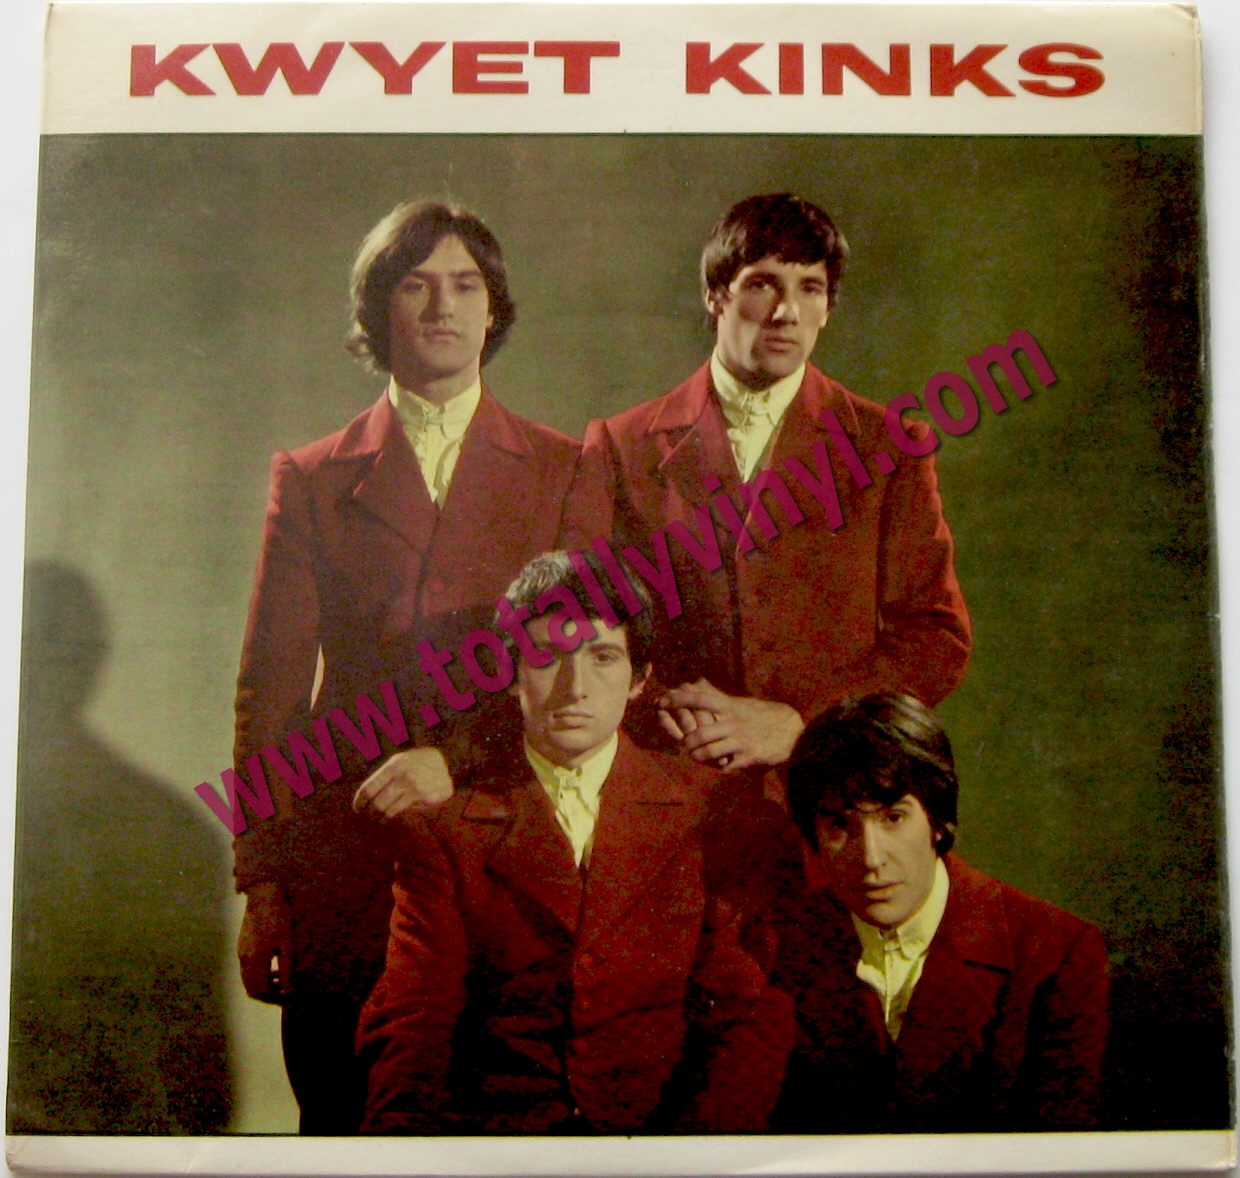 Totally Vinyl Records || Kinks, The - Kwyet Kinks EP: Wait till the ...